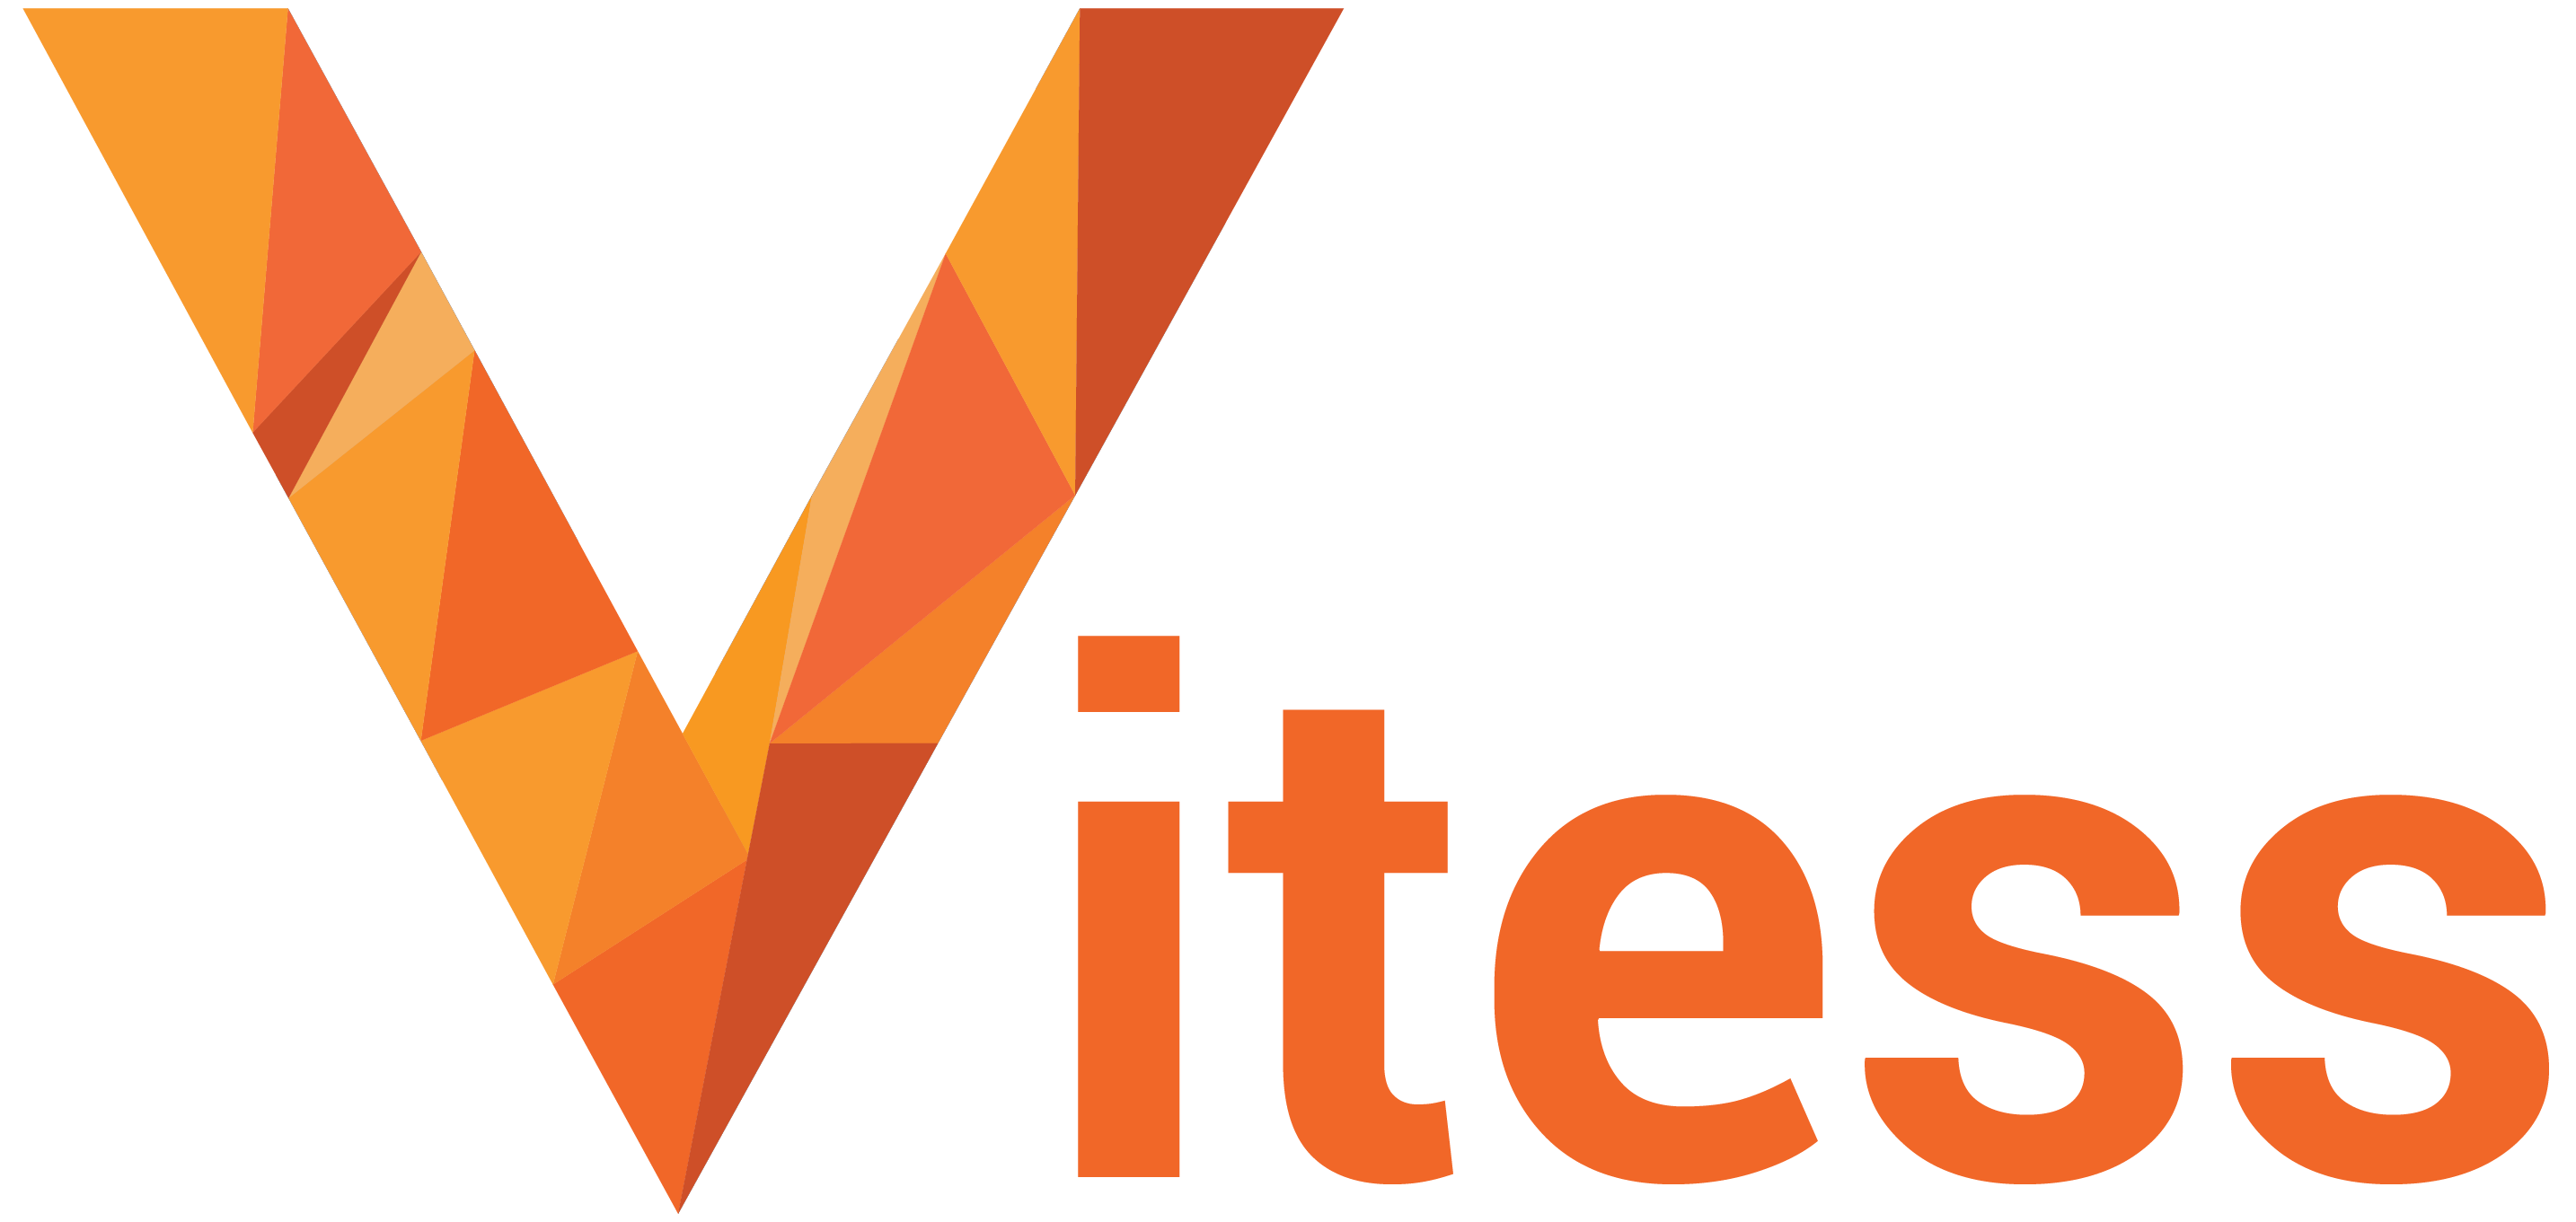 vitess_full_logo